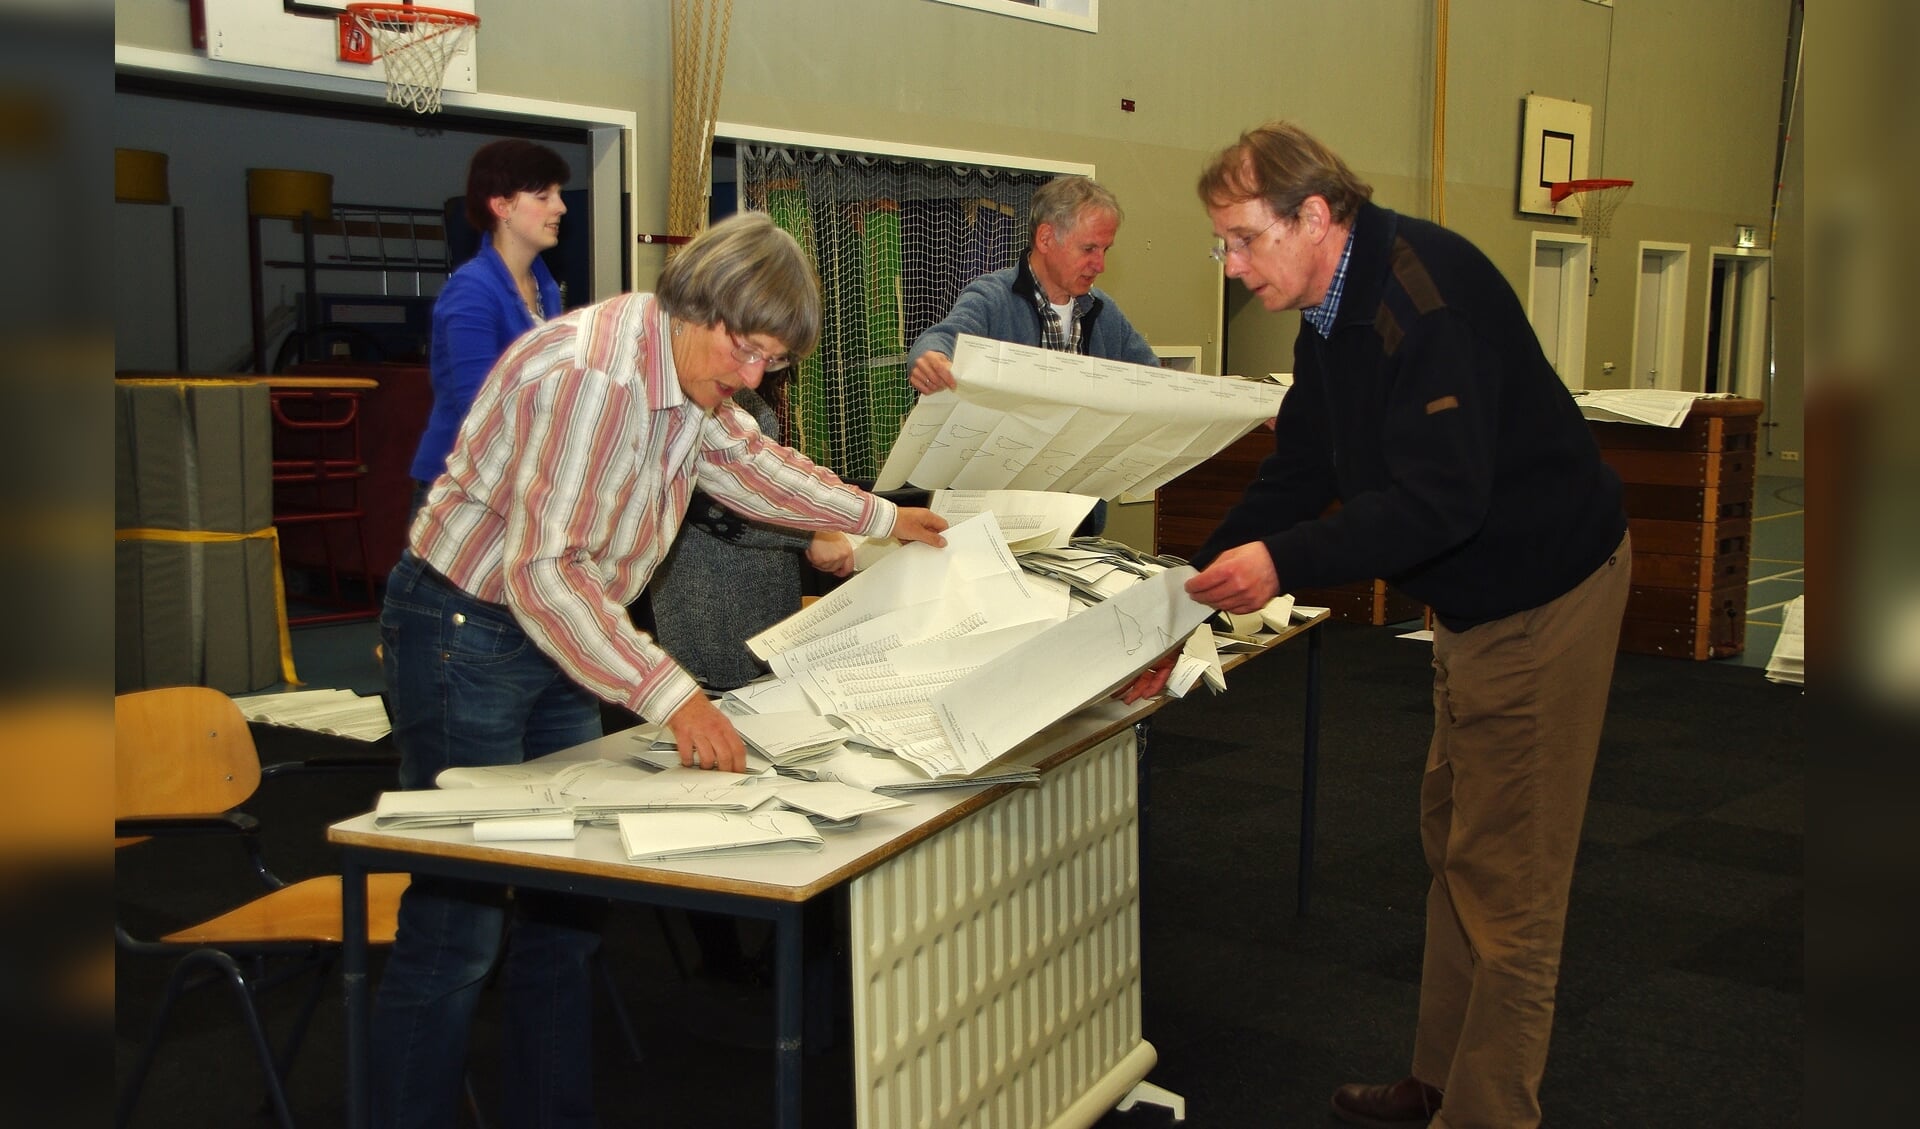 Even na negenen was het stembureau in Poelgeest al druk aan het tellen. | Foto Willemien Timmers